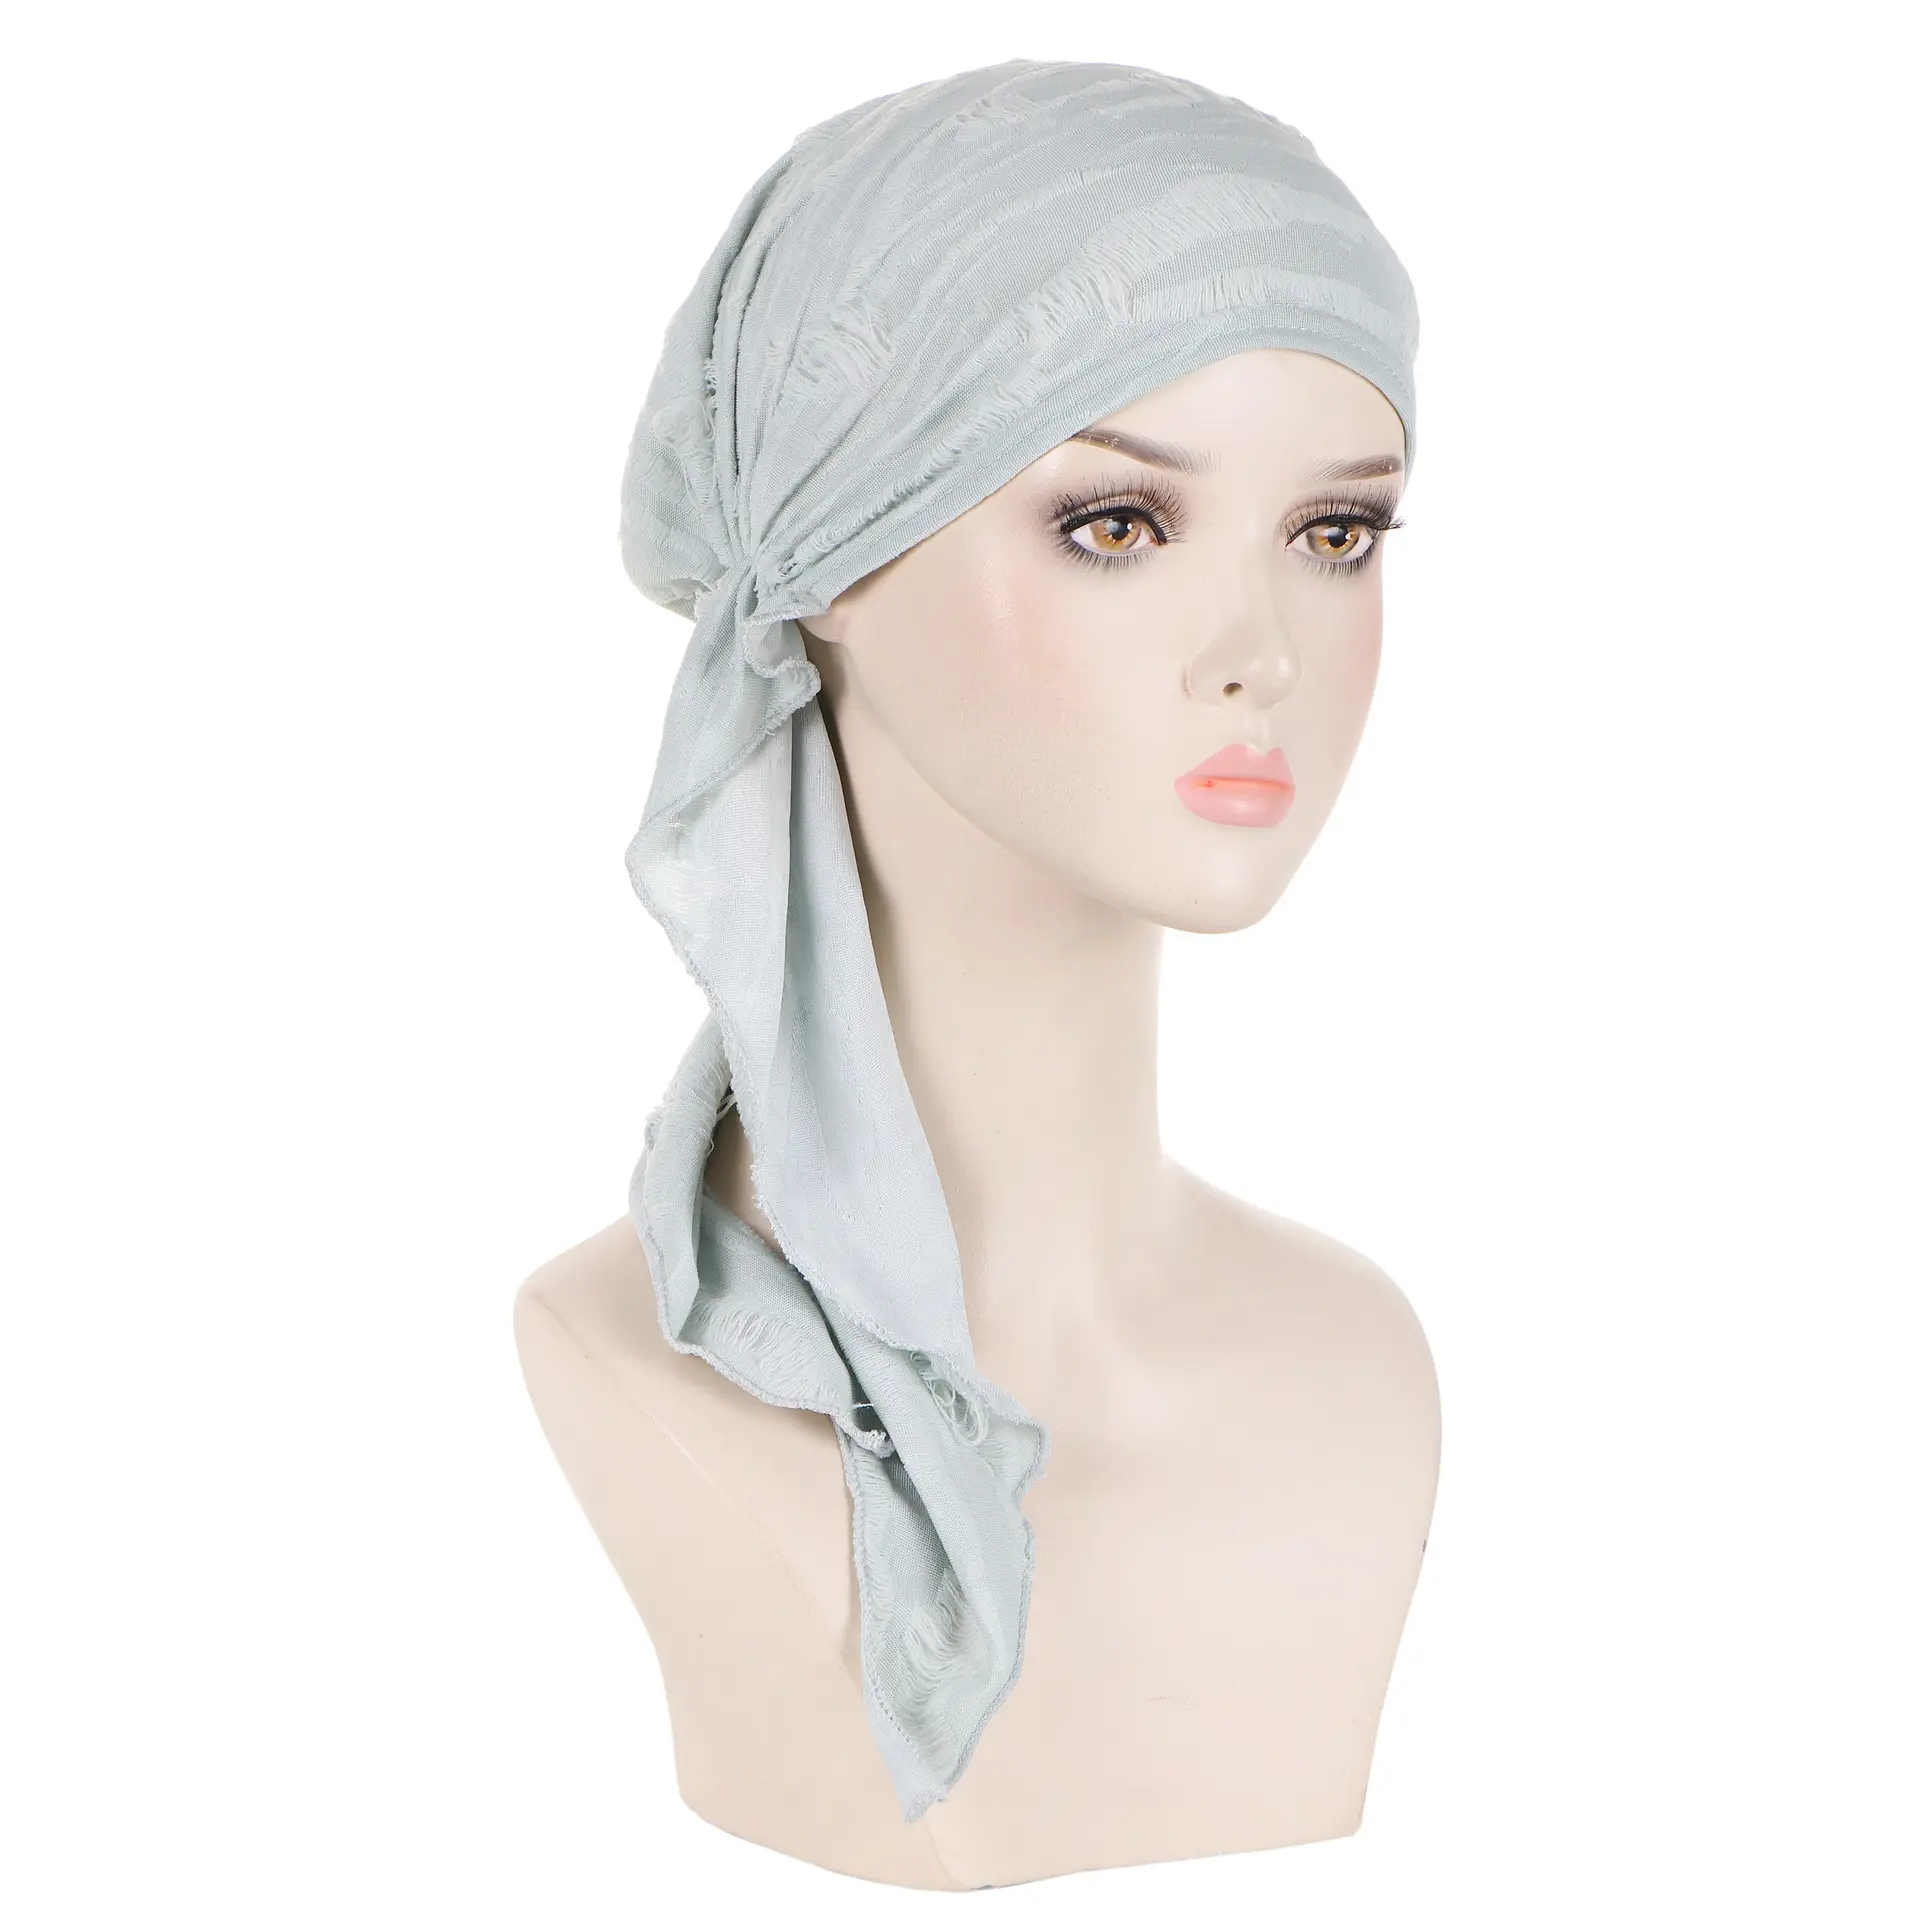 คุณภาพสูงผู้หญิงหมวกมะเร็งอิสลามฮิญาบรูปขนยาวหางชาติพันธุ์ tuaban หมวกผู้หญิงมุสลิมผ้าพันคอหัวกระโปรง